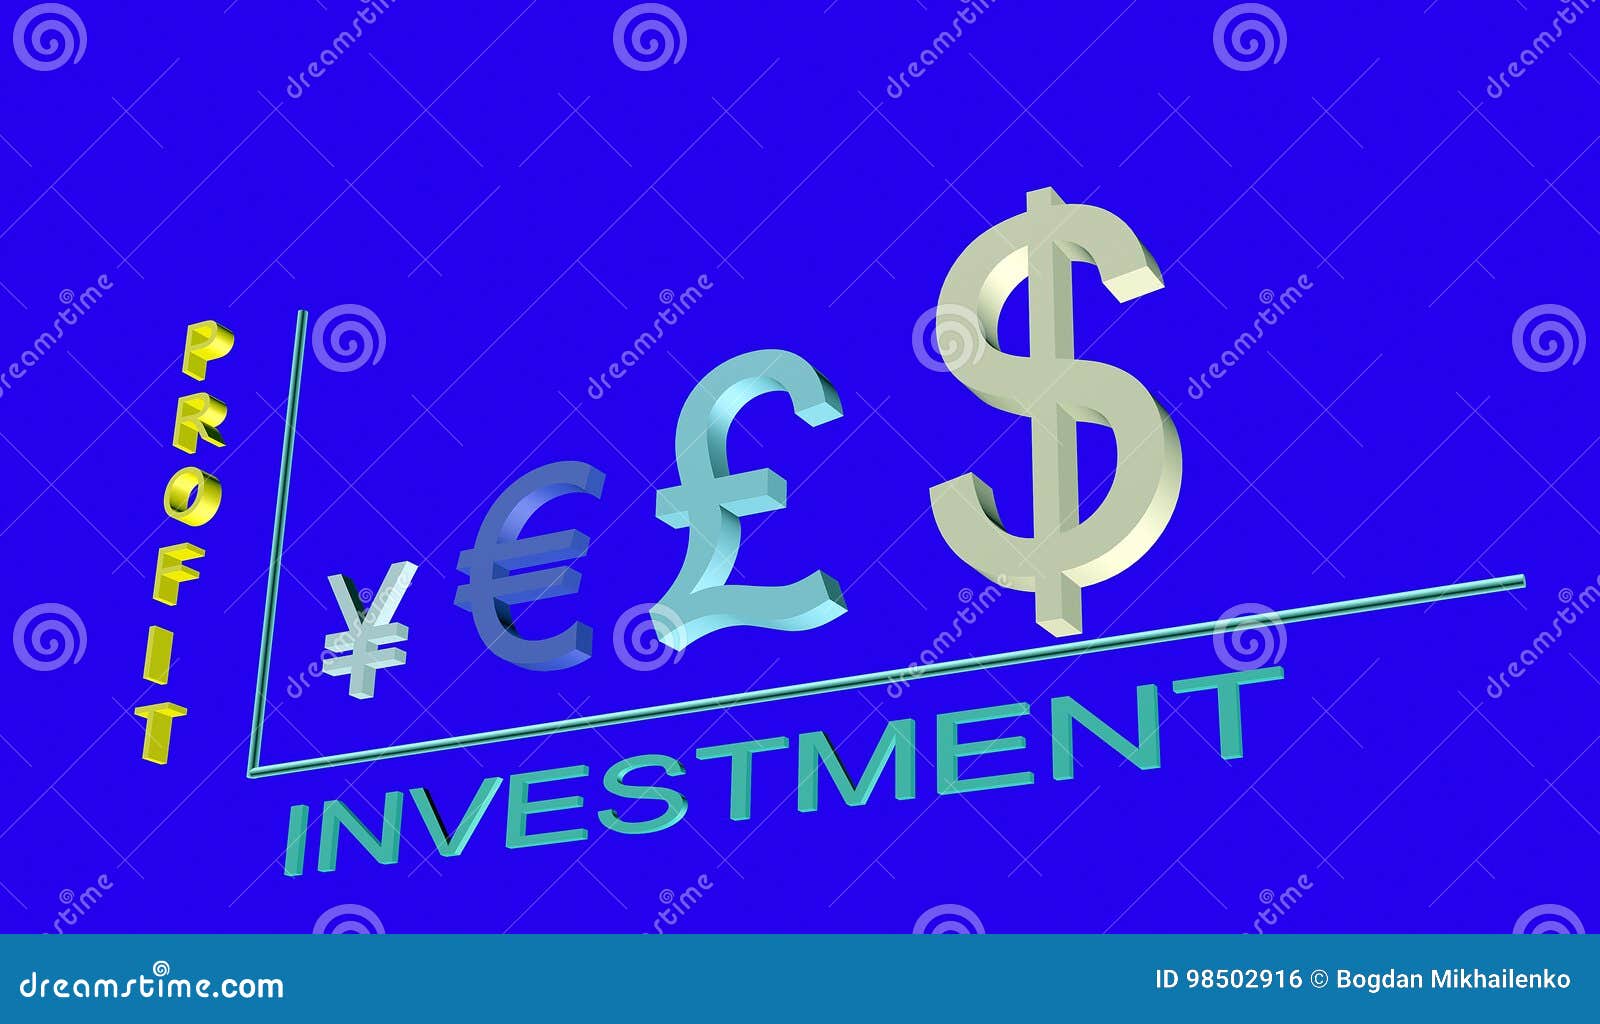 Rozkład inwestorski zysk od waluta symboli/lów 3D. Charaktery specjalizują się lokalizują w postaci wykresu zysk inwestycje